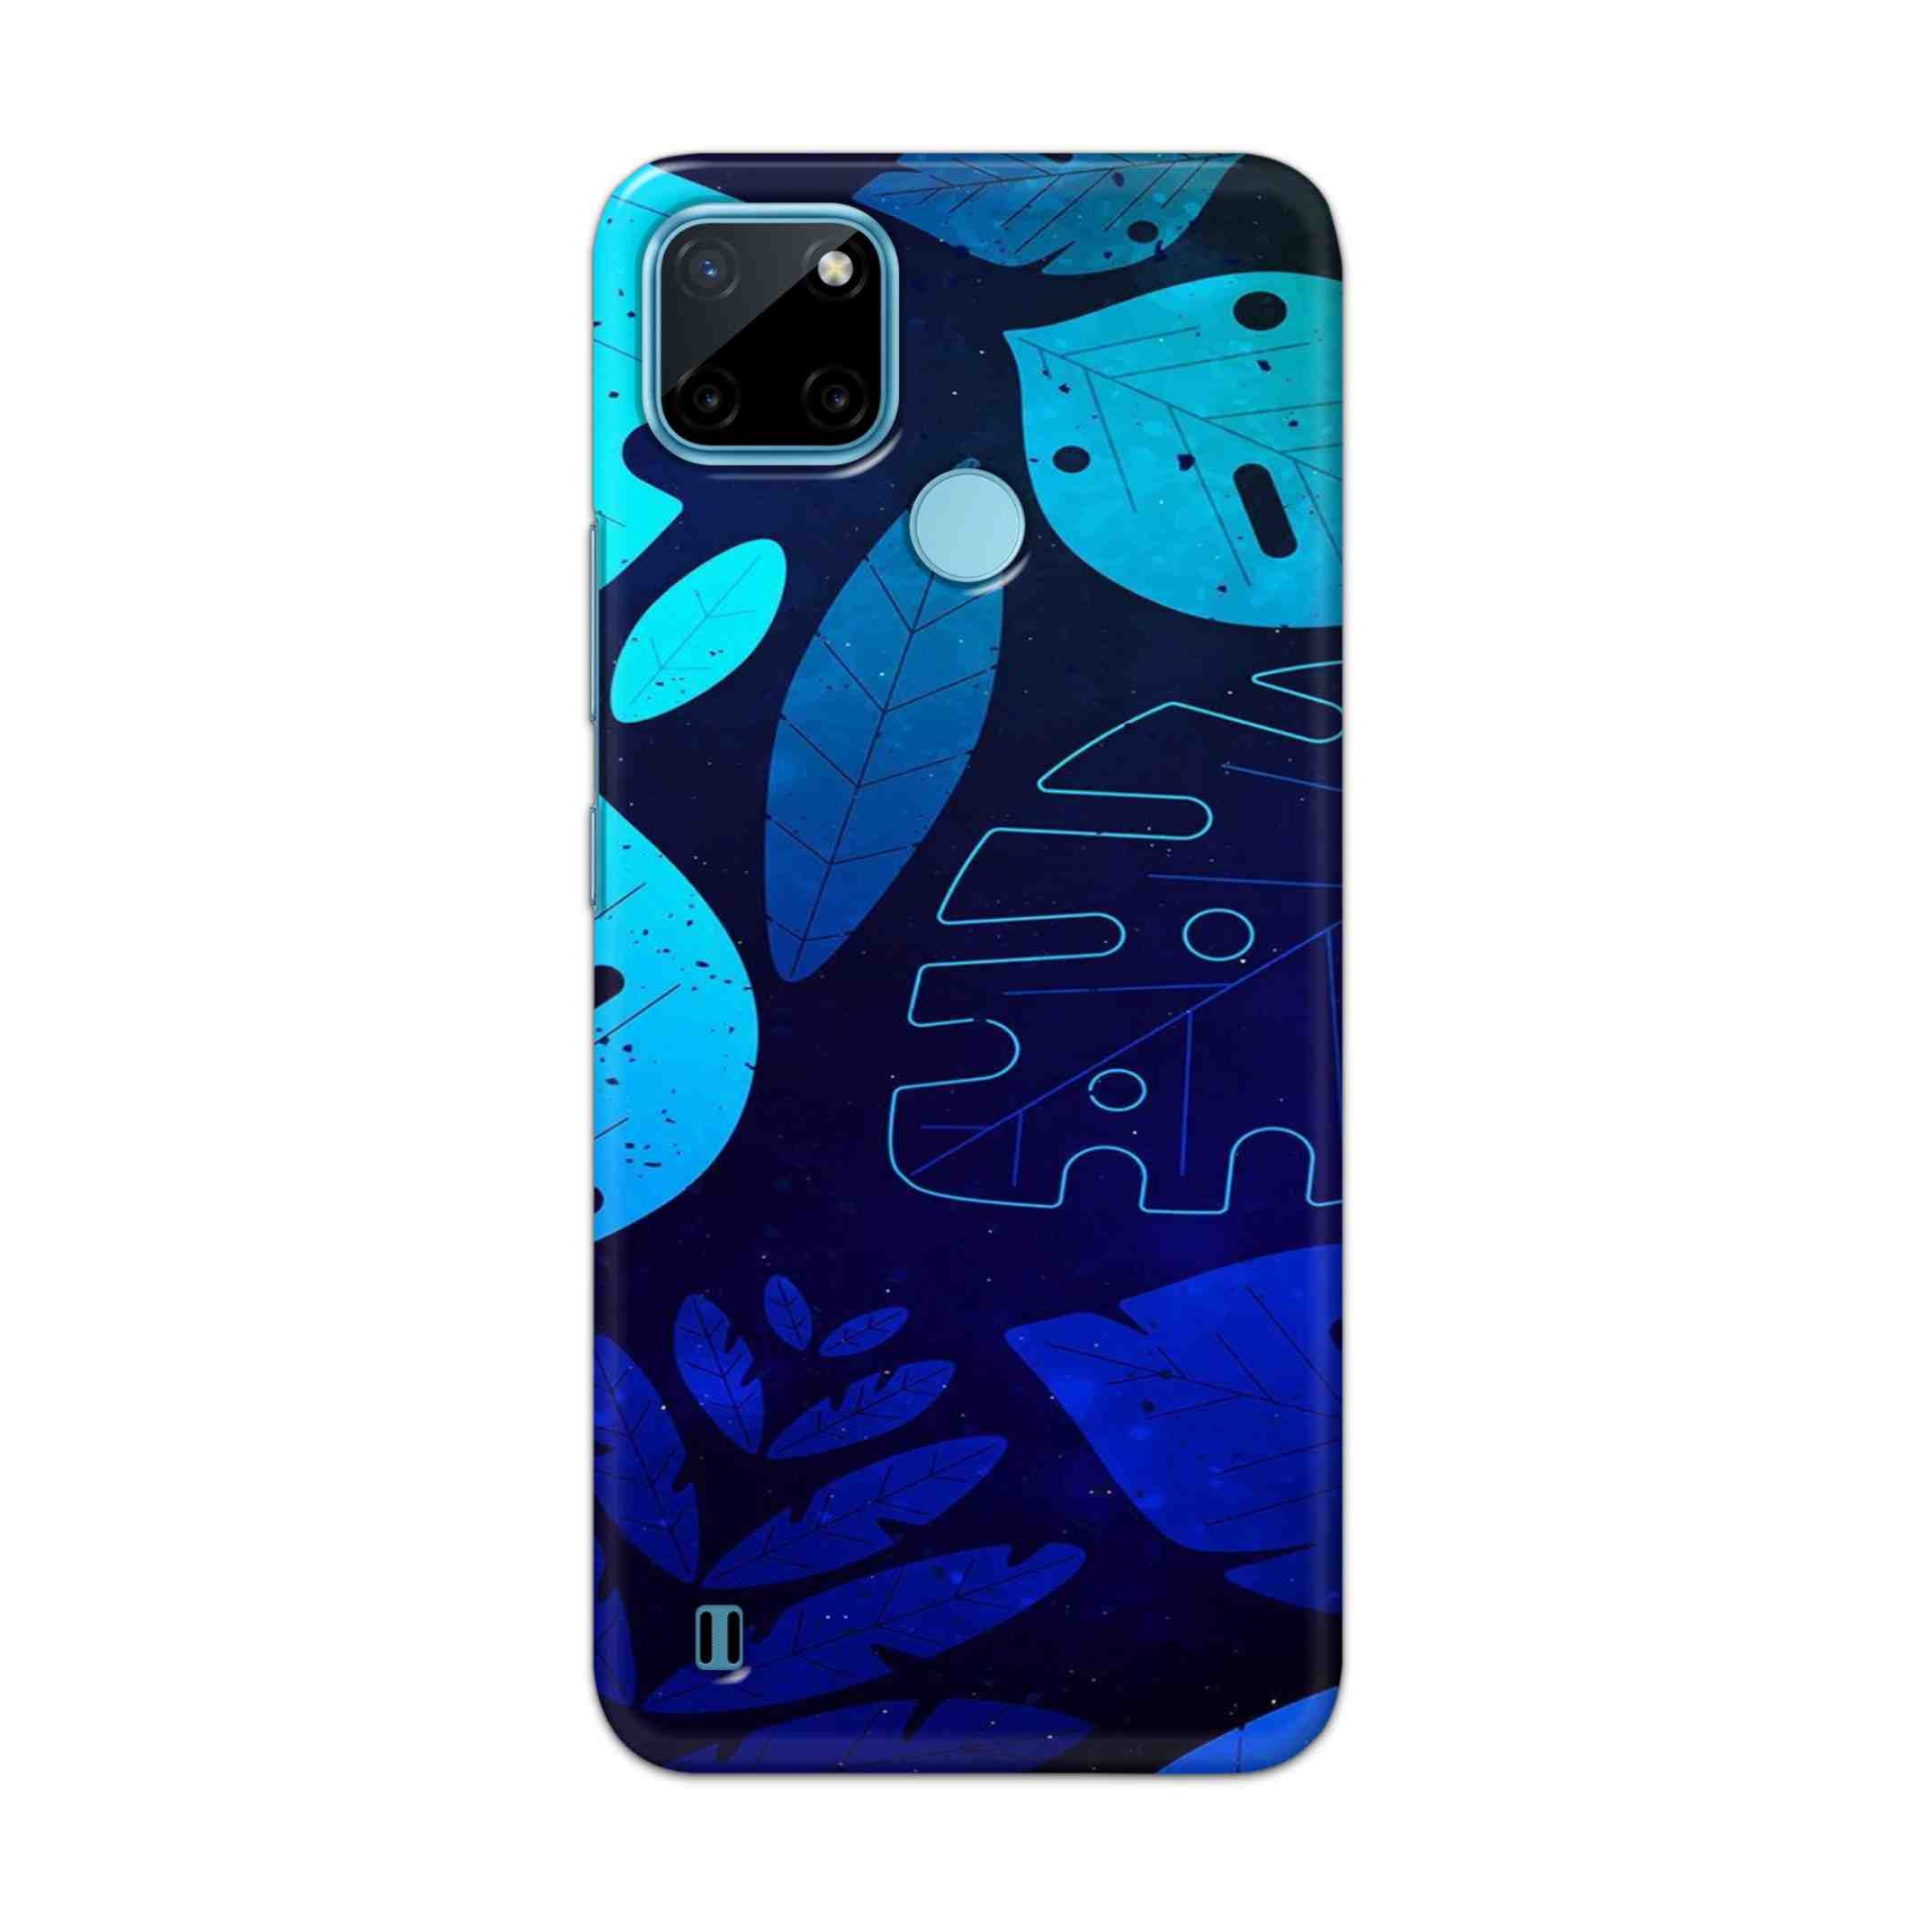 Buy Neon Leaf Hard Back Mobile Phone Case Cover For Realme C21Y Online